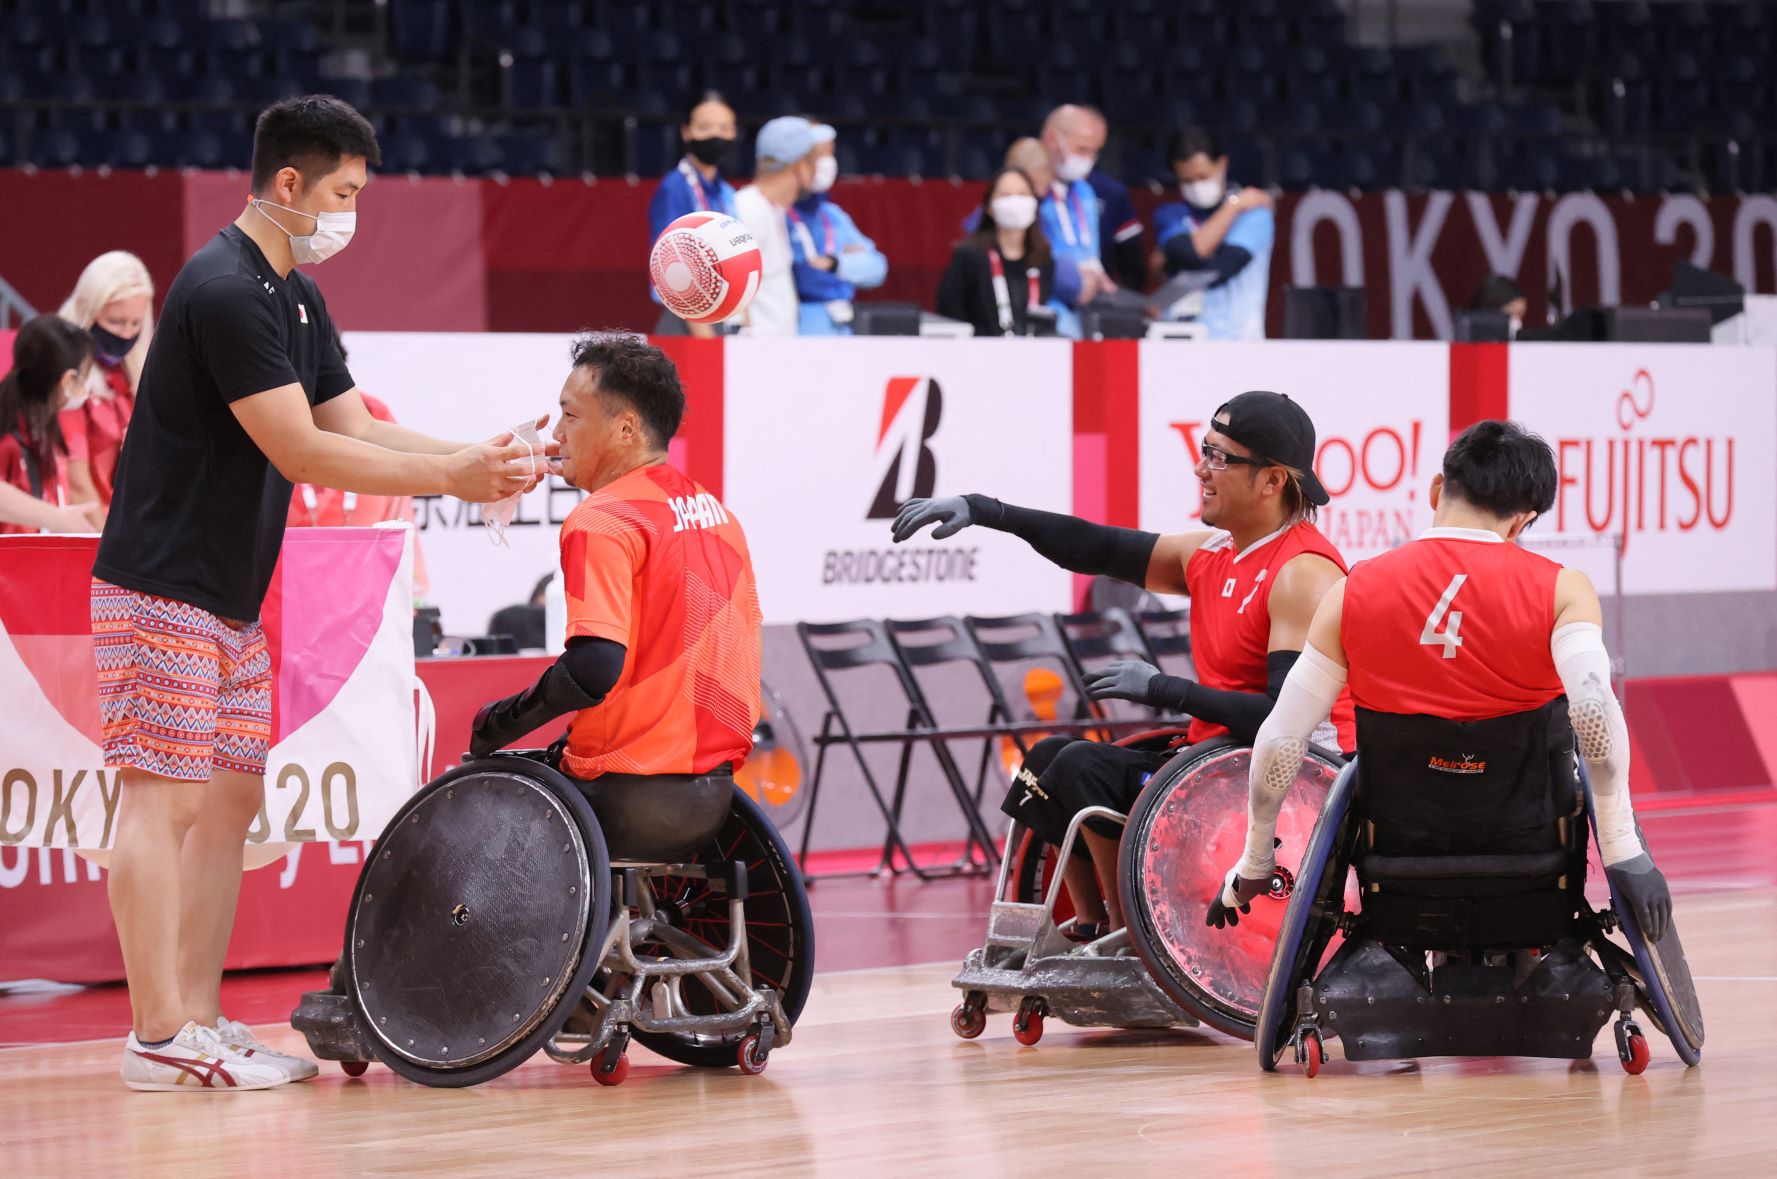 Pausa no treinamento da seleção japonesa de basquete em cadeira de rodas: atletas amputados são mais suscetíveis ao calor (Foto: Shuhei Yokoyama / Yomiuri Shimbun / AFP)